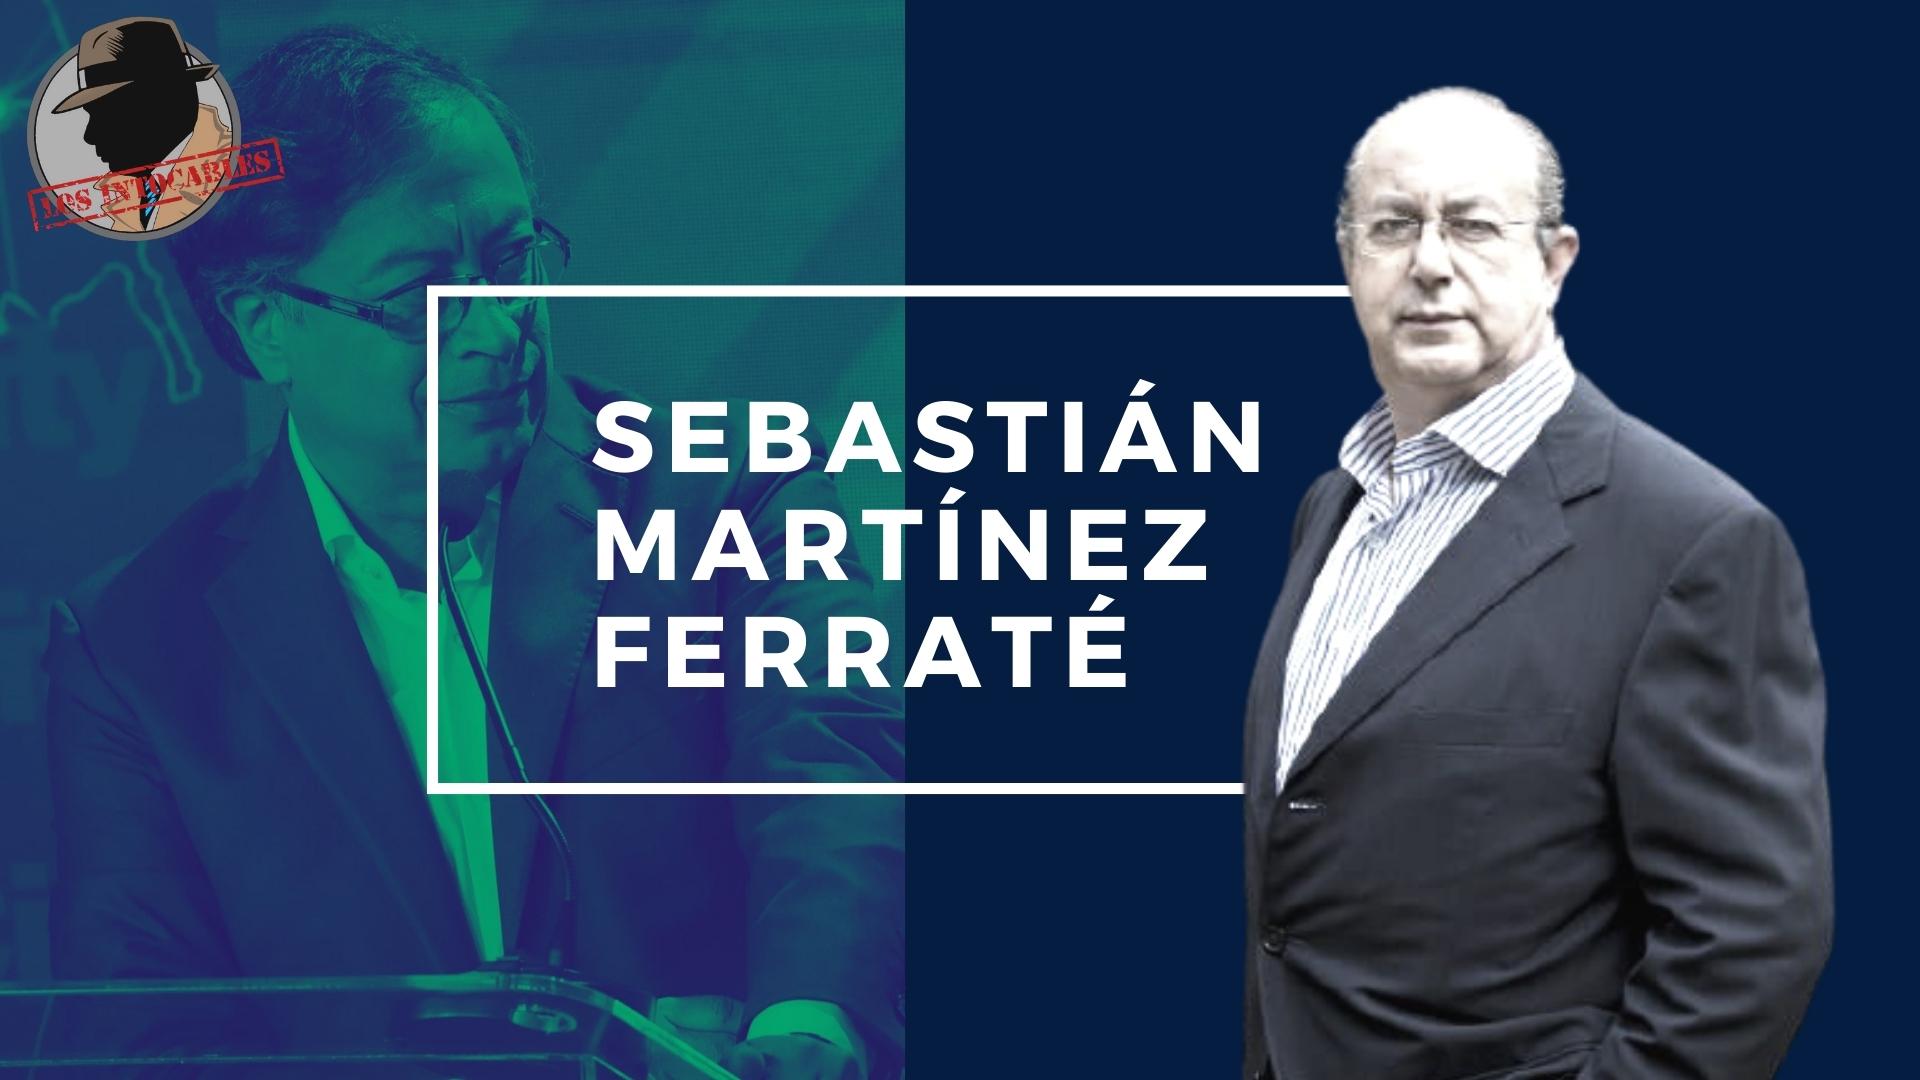 Sebastián Martínez Ferraté